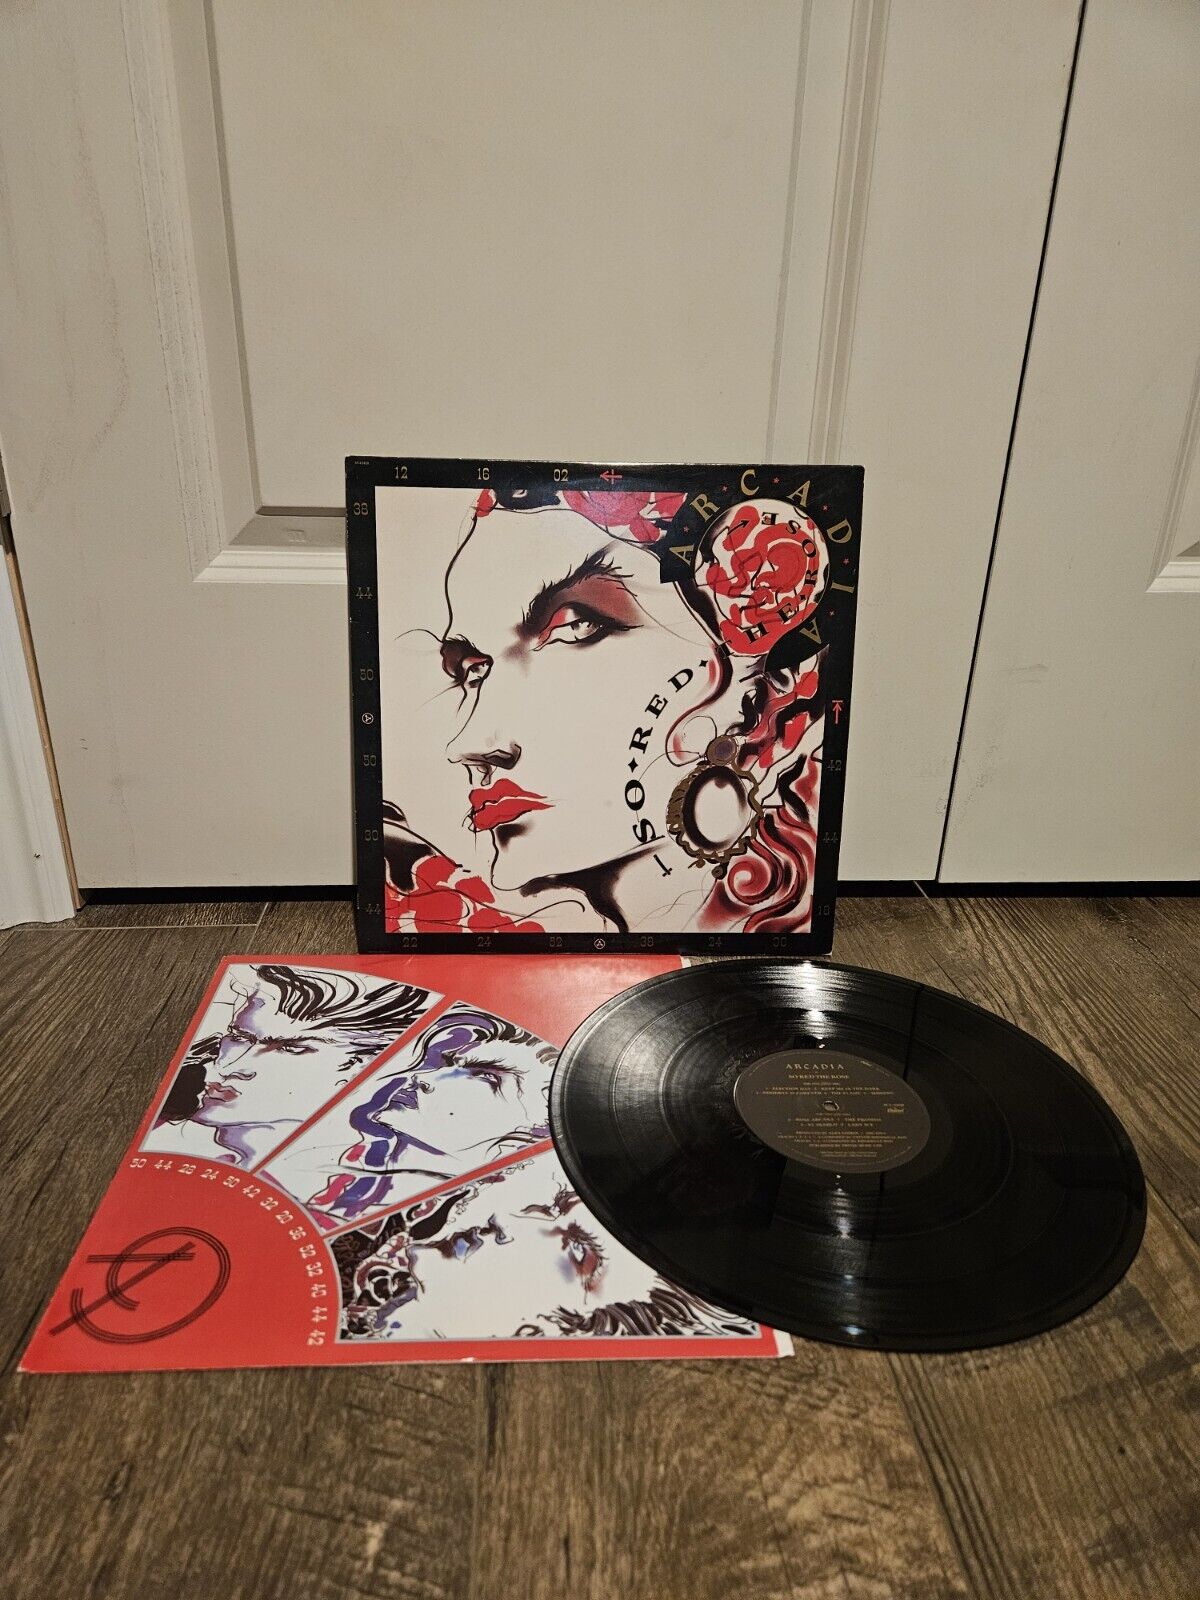 ARCADIA - 1985 - "SO RED THE ROSE" - ORIGINAL 12" ALBUM - PCSD 101 Vinyl Record